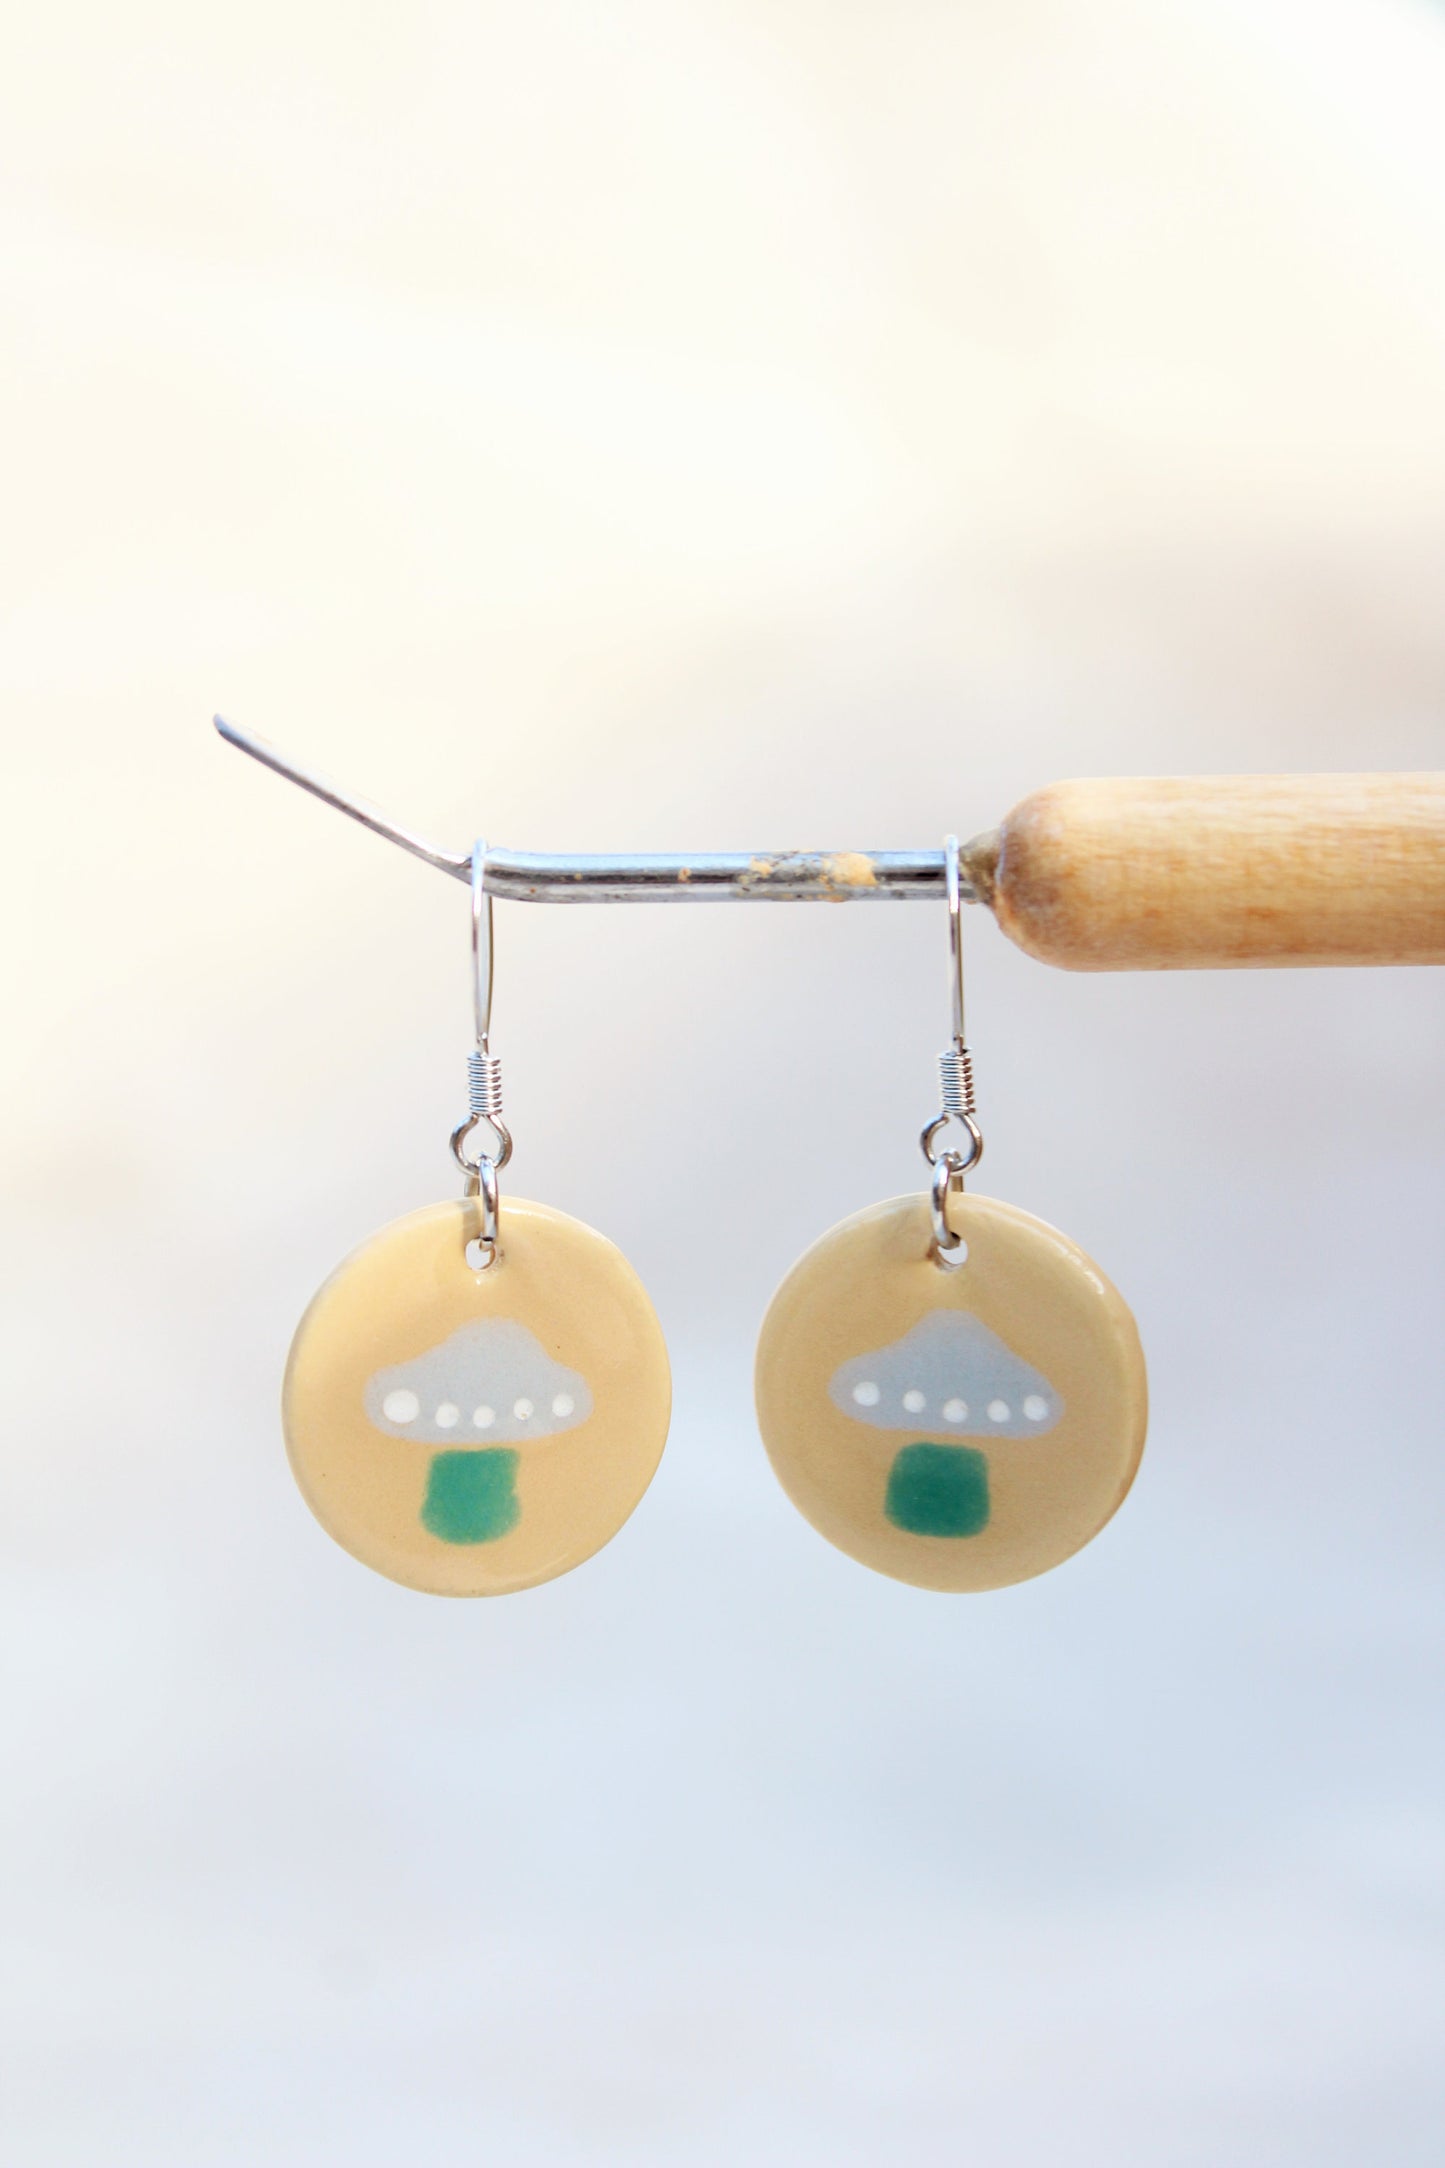 Mushroom Earrings - Ceramic Mushroom Earrings - Tan + Gray + Green Toadstools